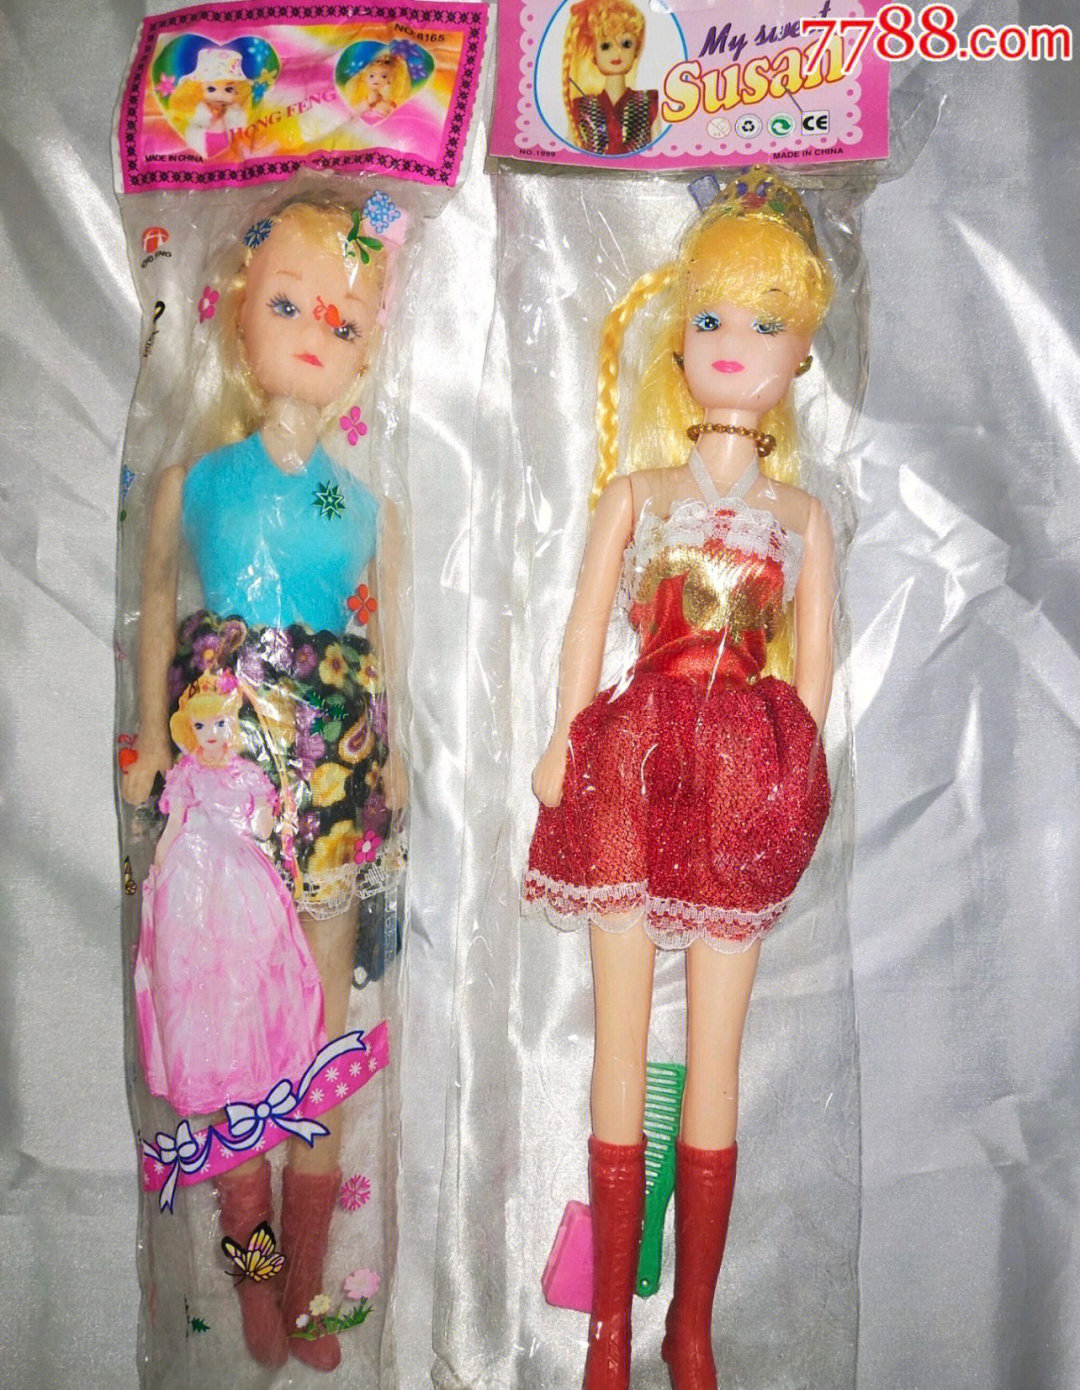 我小时候很喜欢收藏芭比娃娃,给她们做衣服给她们设计头型